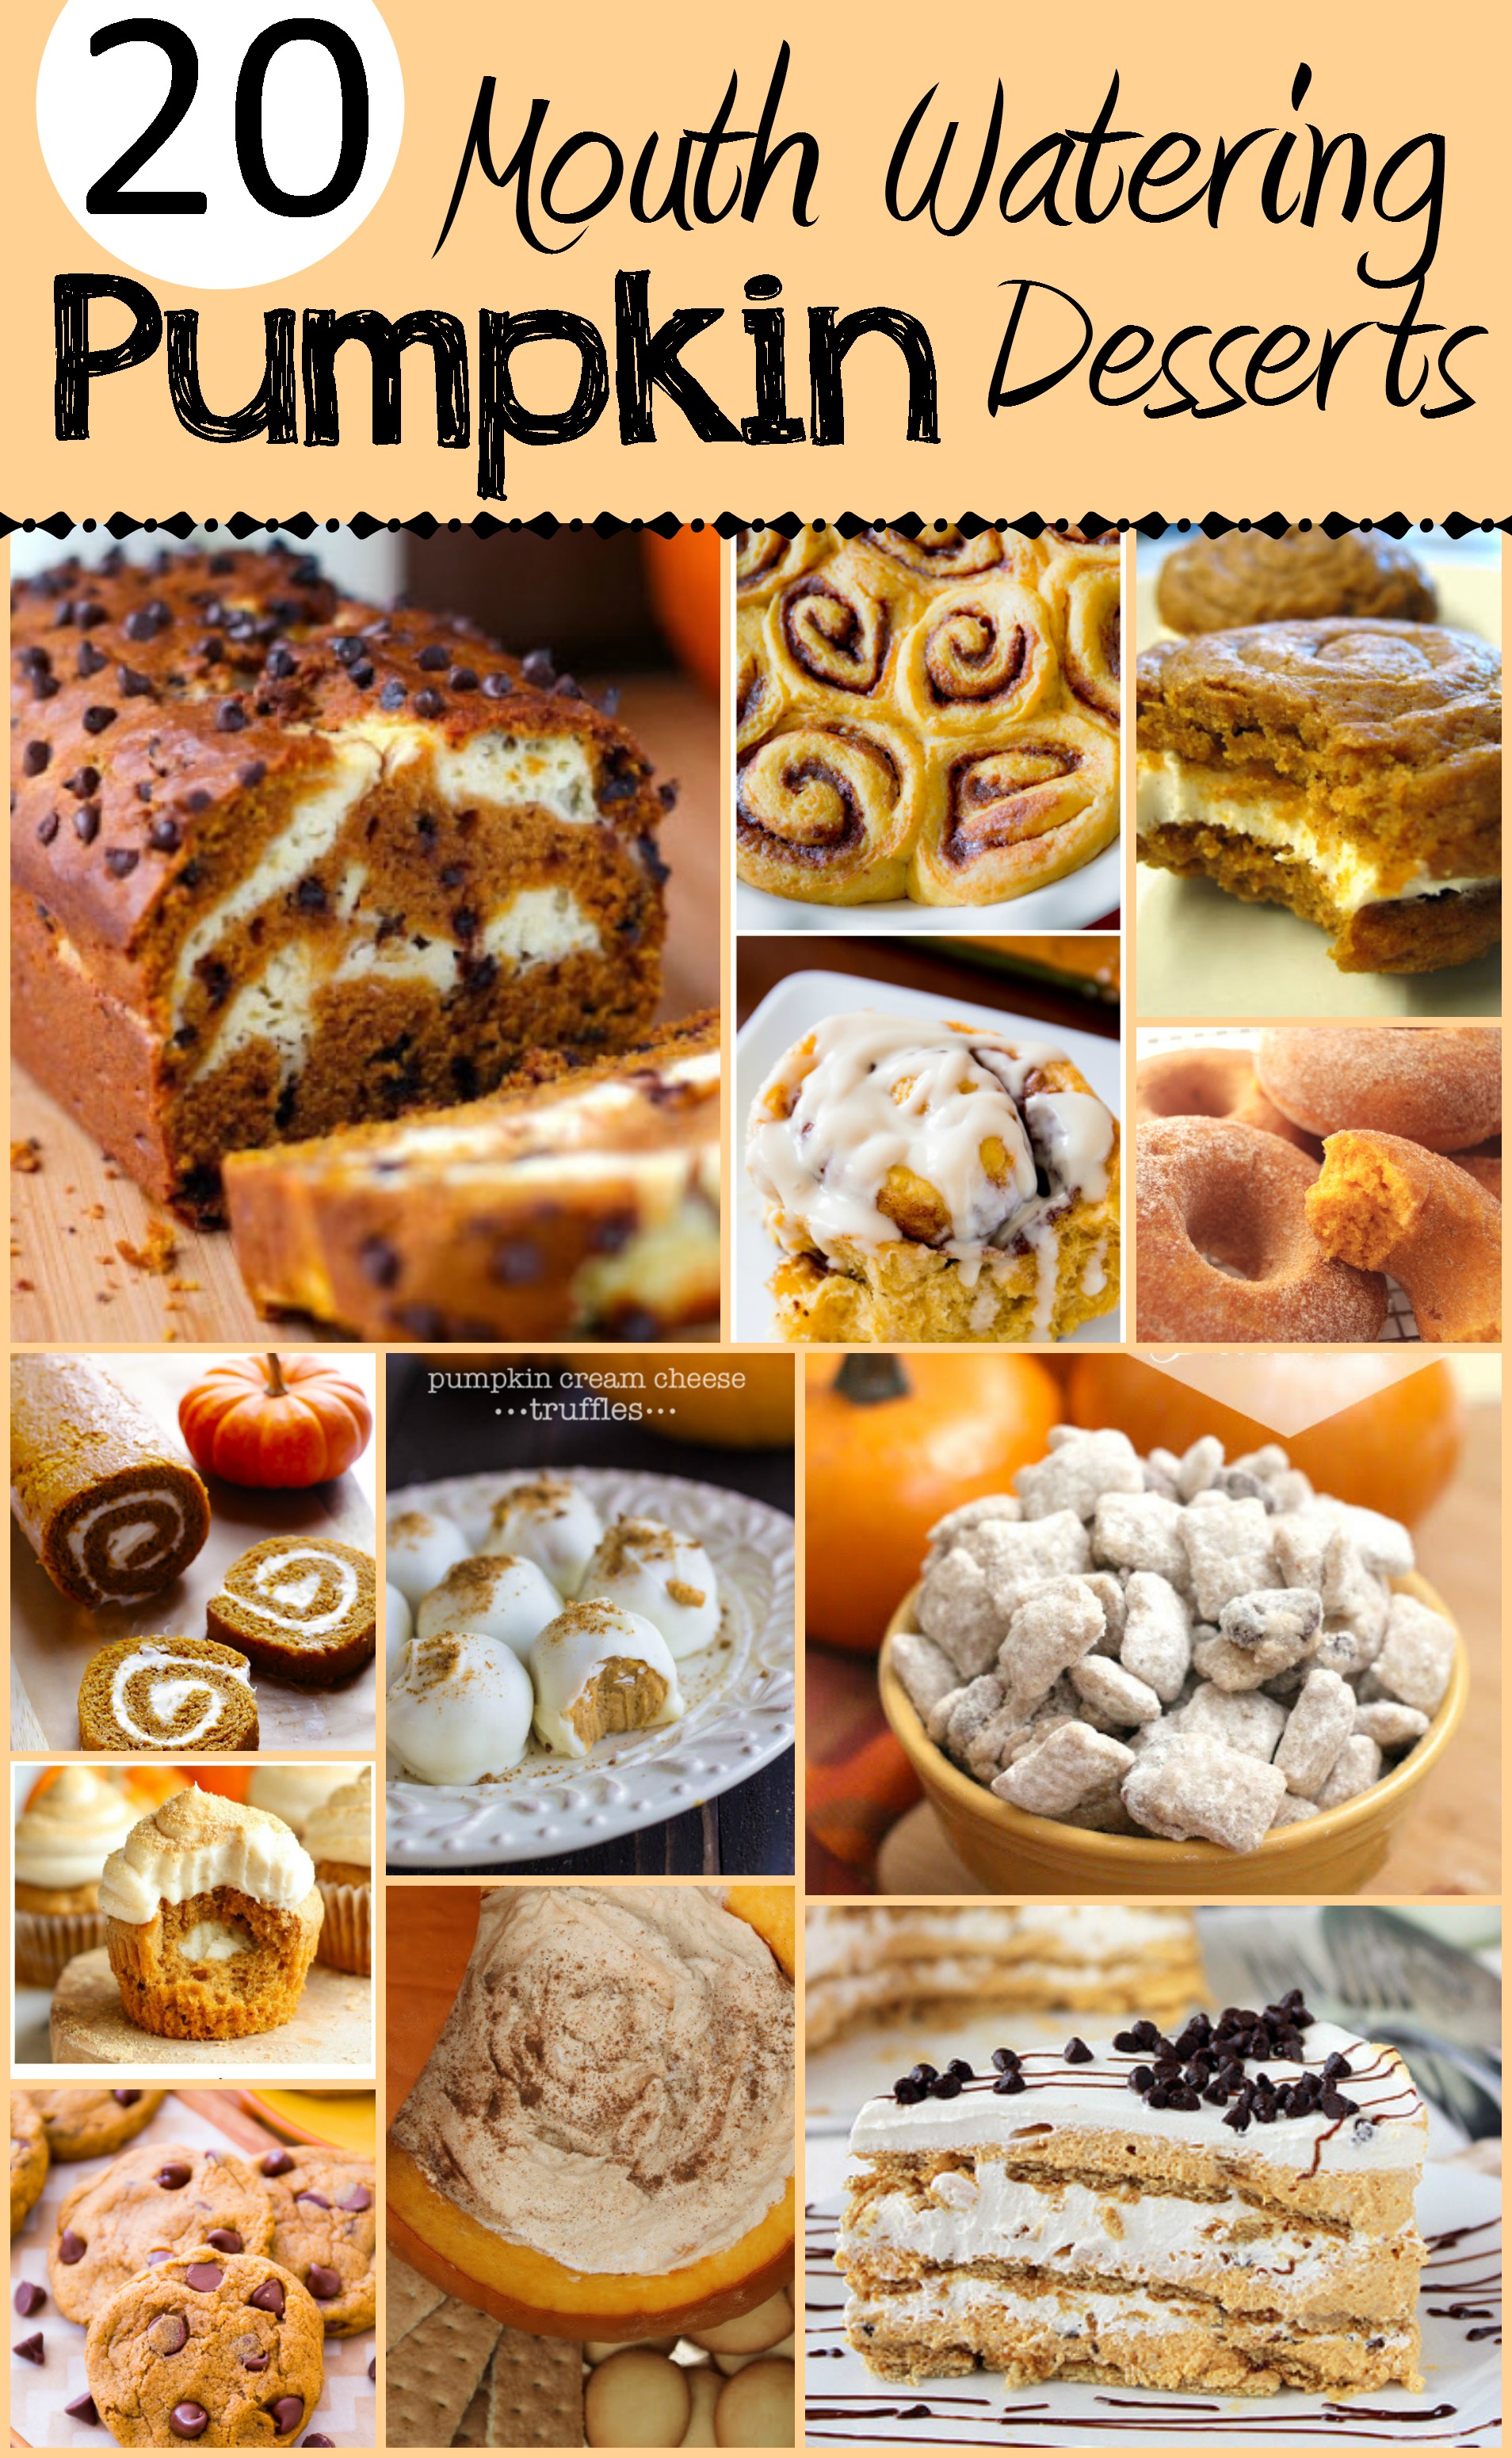 LOVE Pumpkin season! Pinning these pumpkin desserts for later!